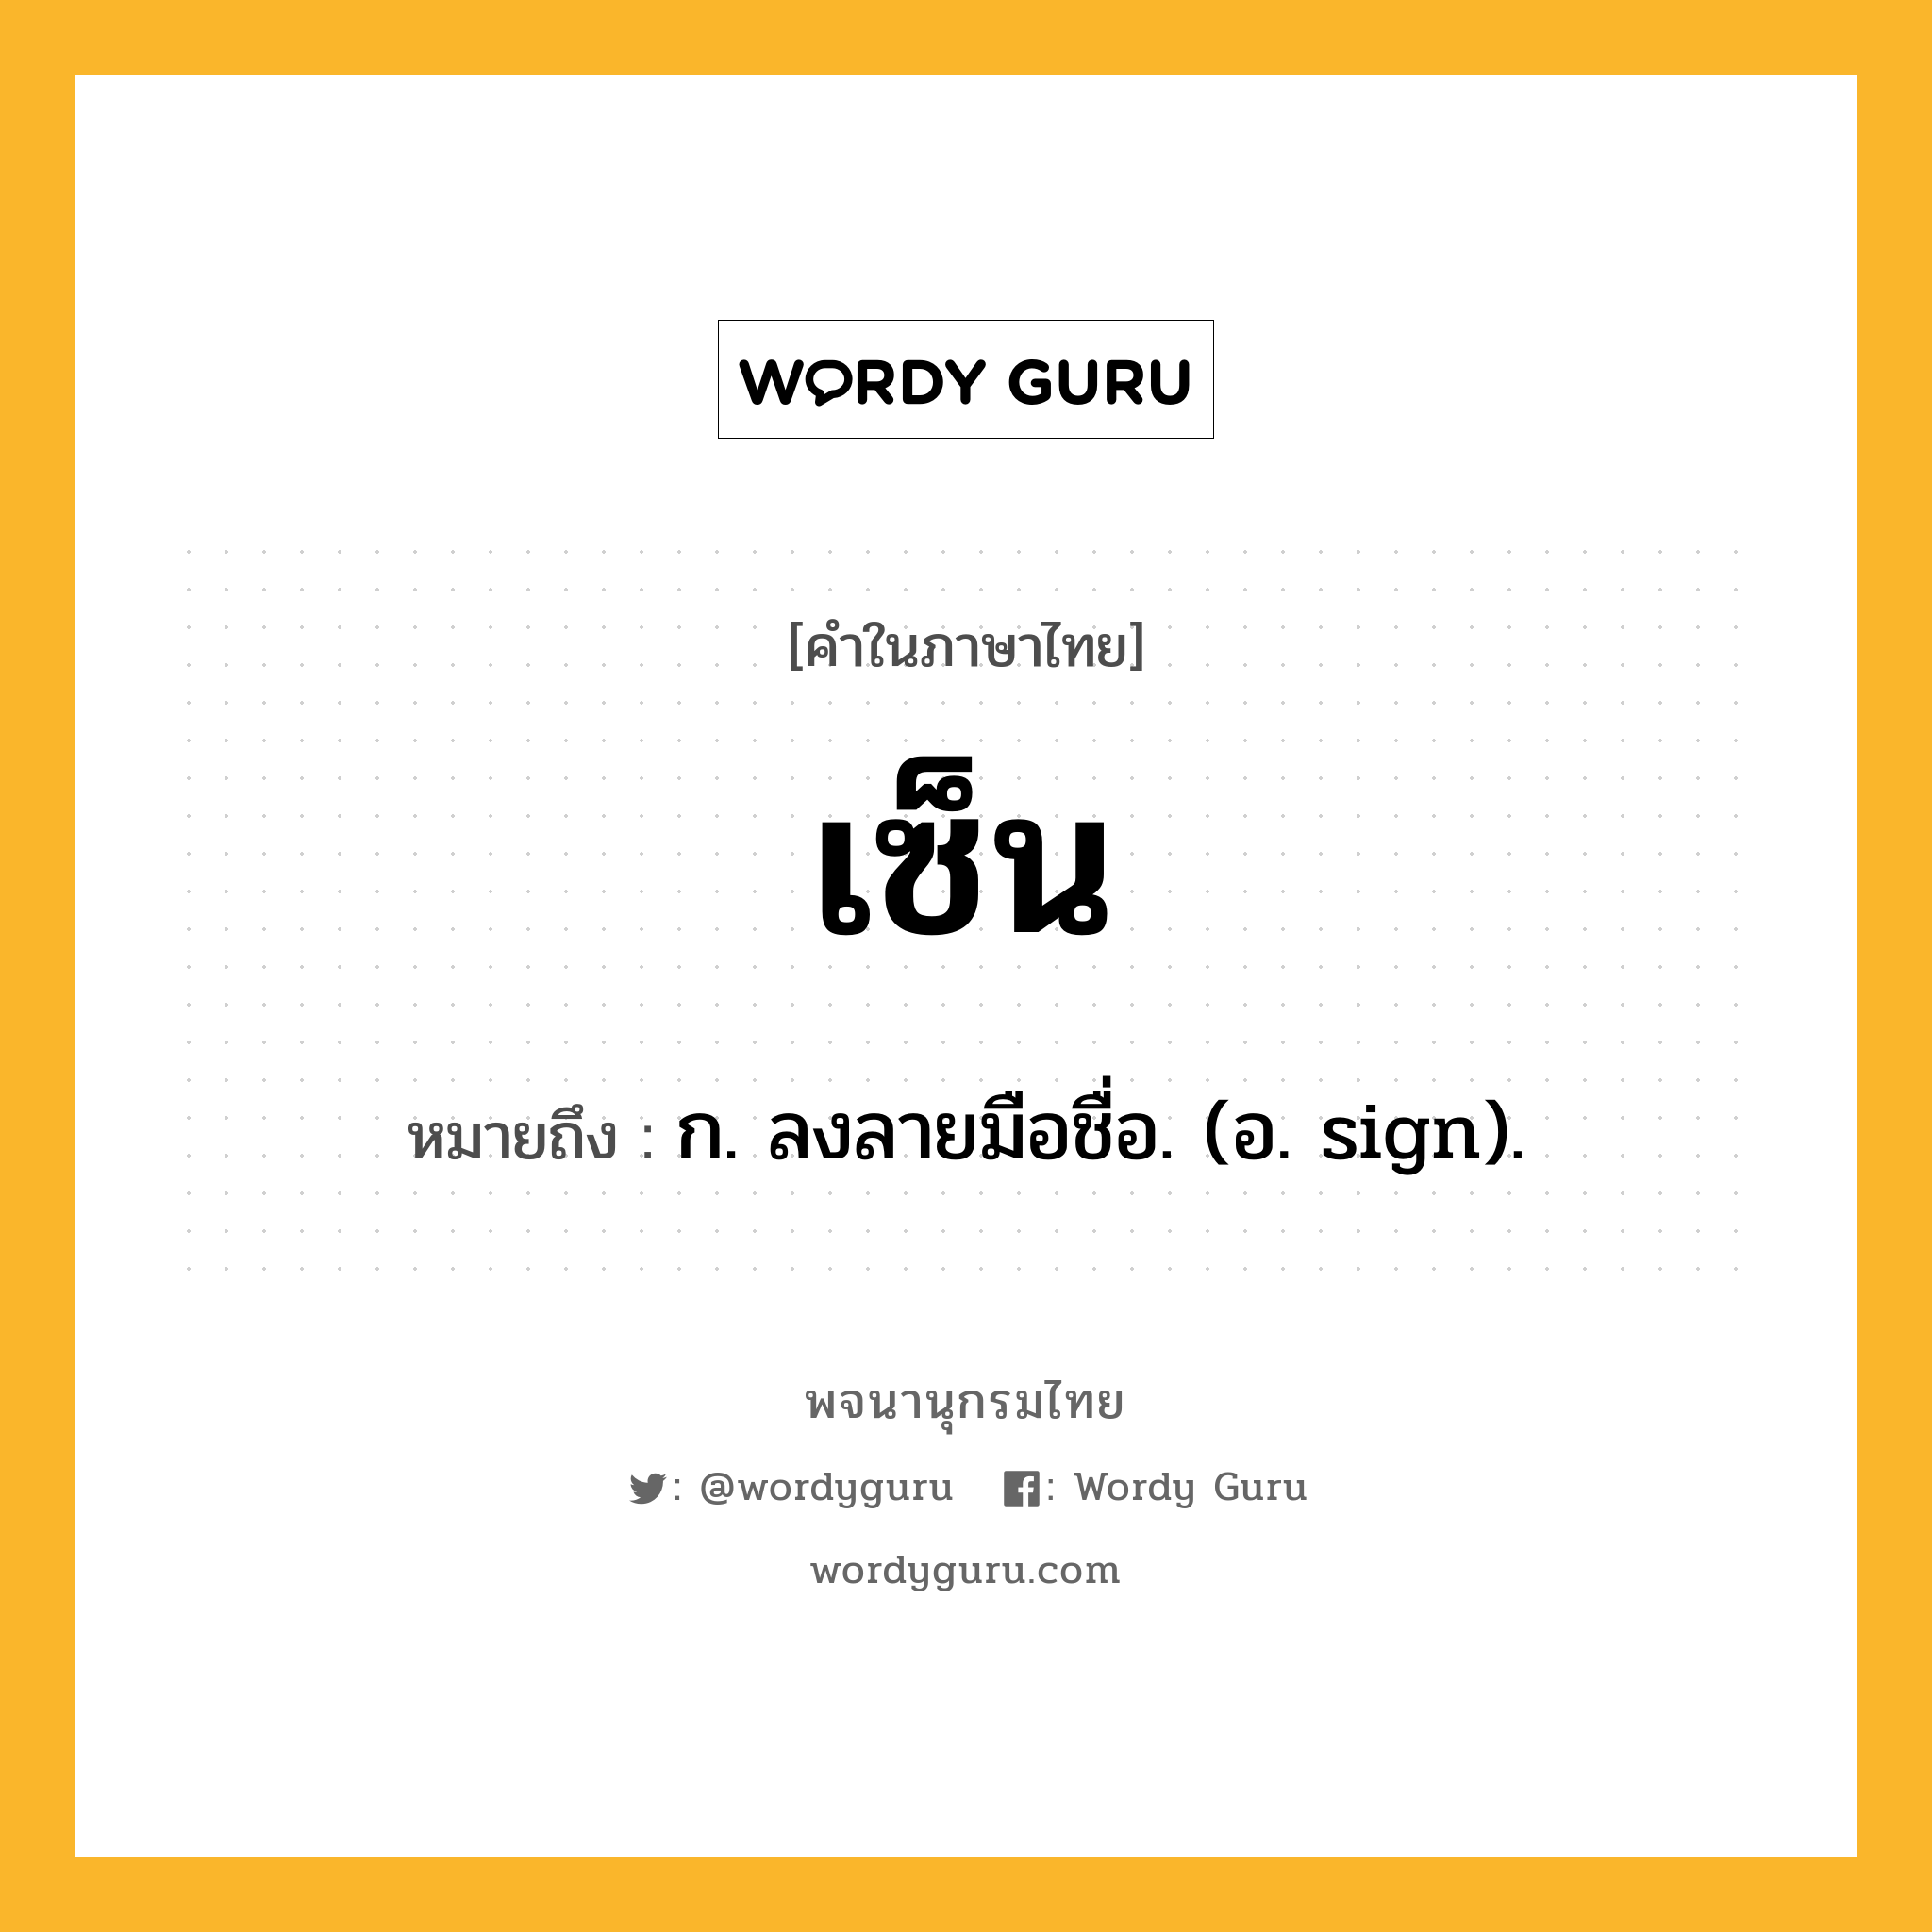 เซ็น หมายถึงอะไร?, คำในภาษาไทย เซ็น หมายถึง ก. ลงลายมือชื่อ. (อ. sign).